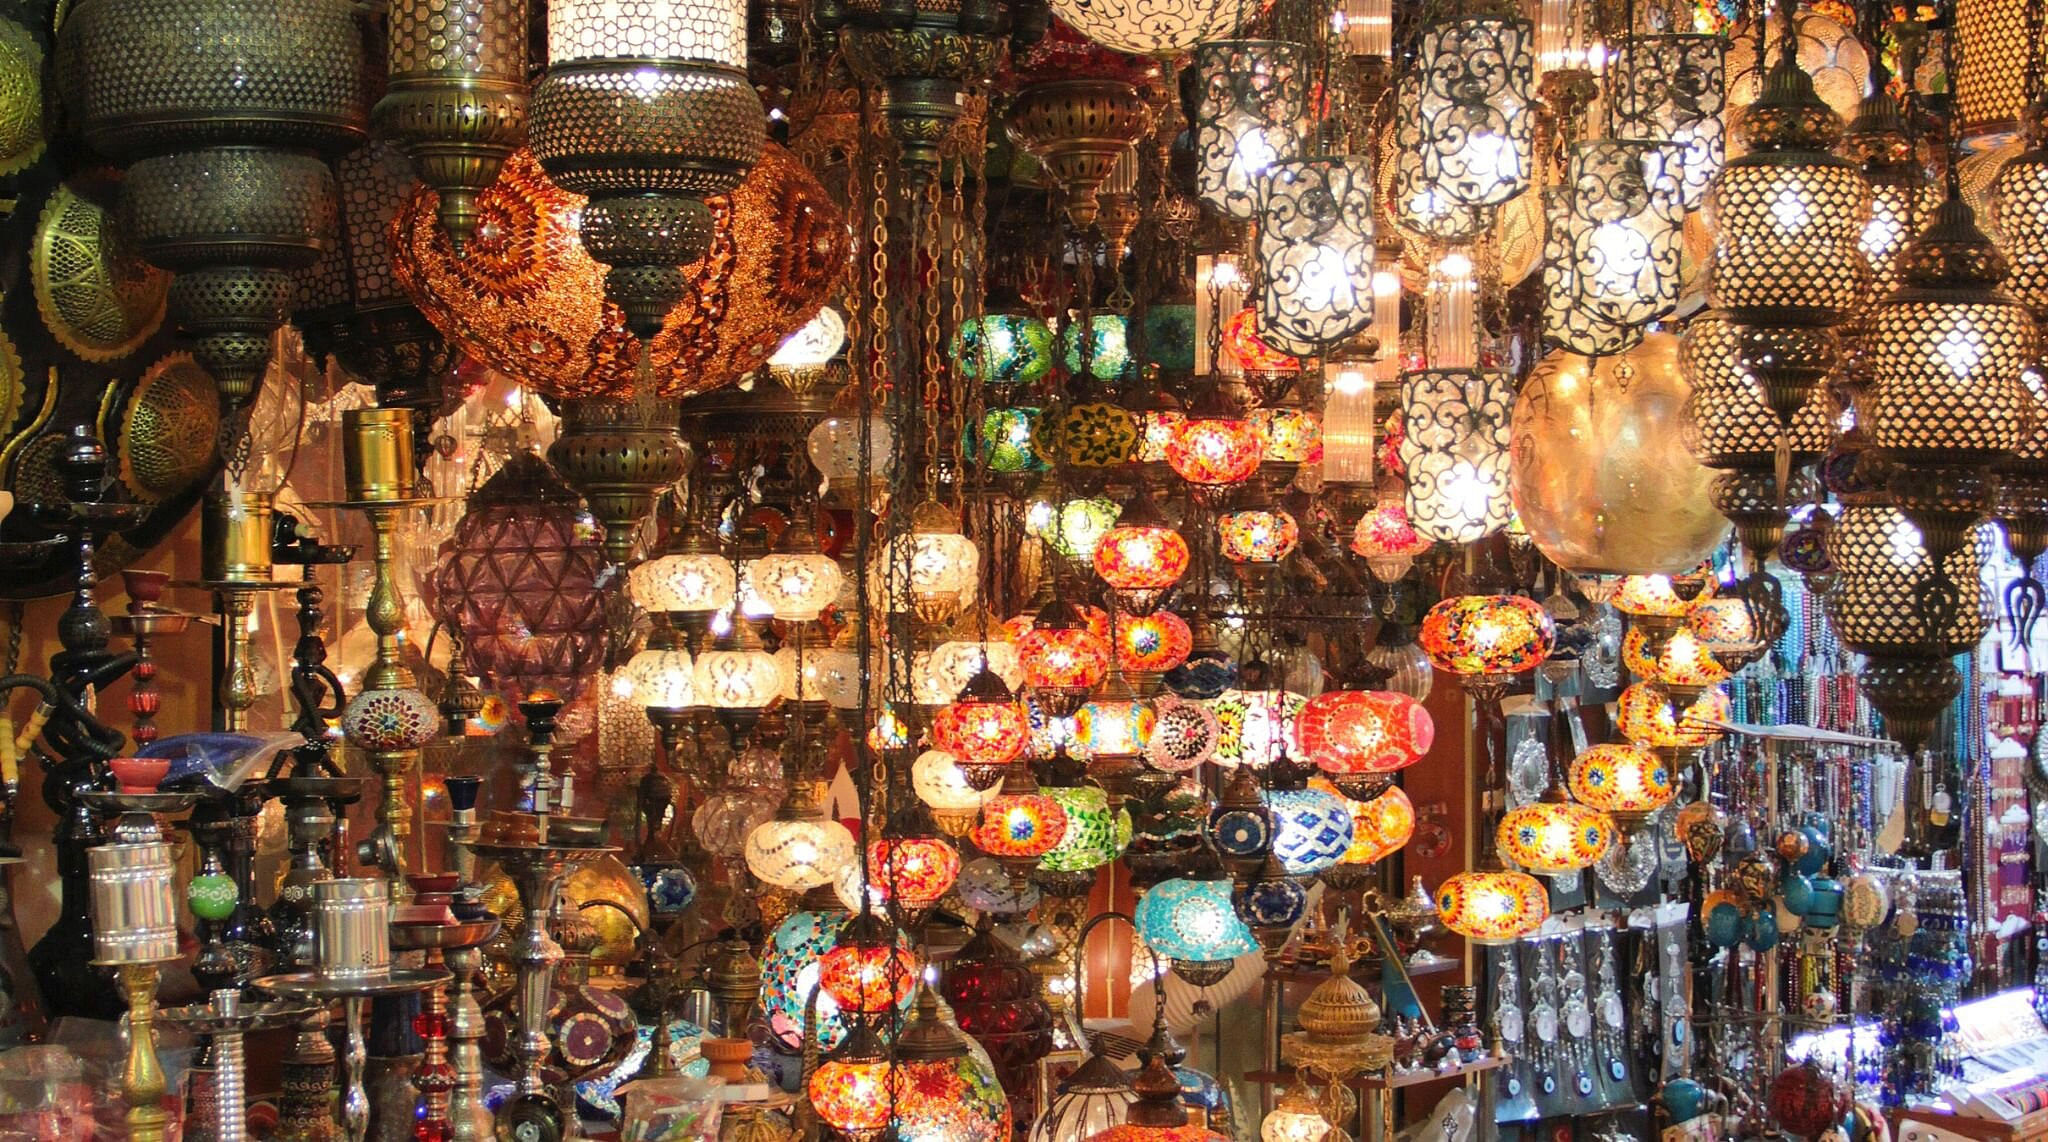 shop in turkey with lanterns